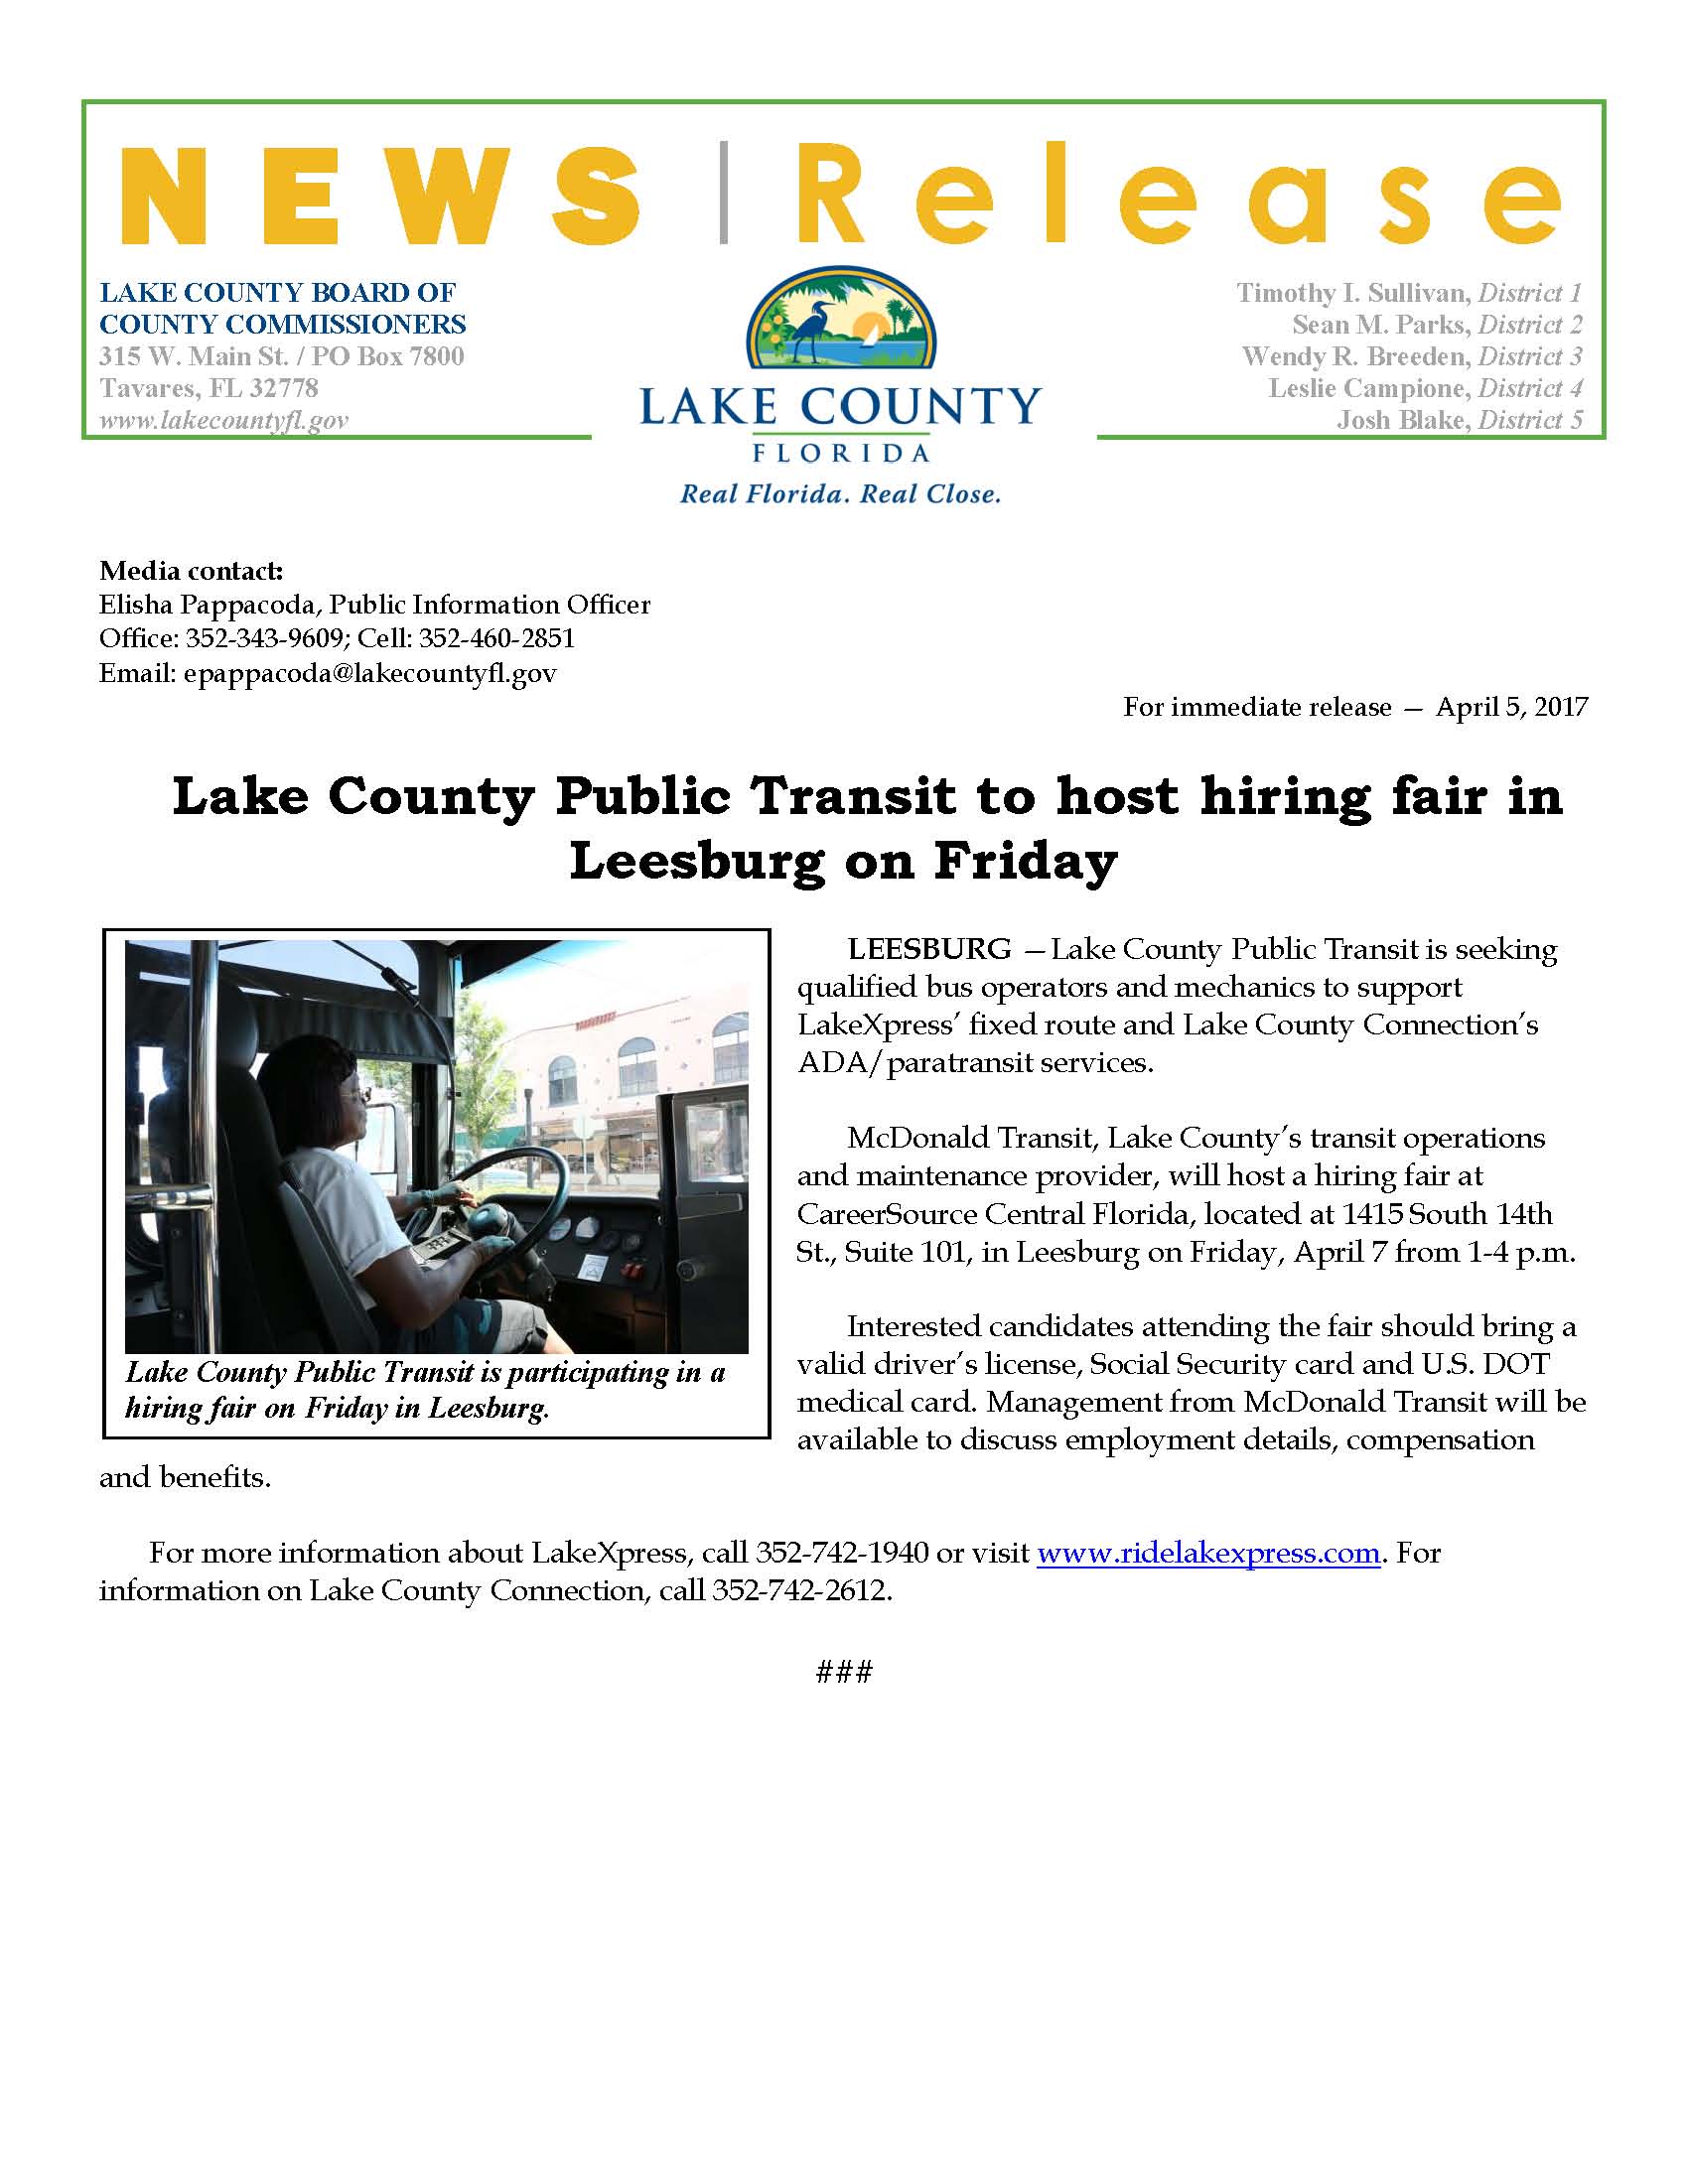 Lake County Public Transit Hiring